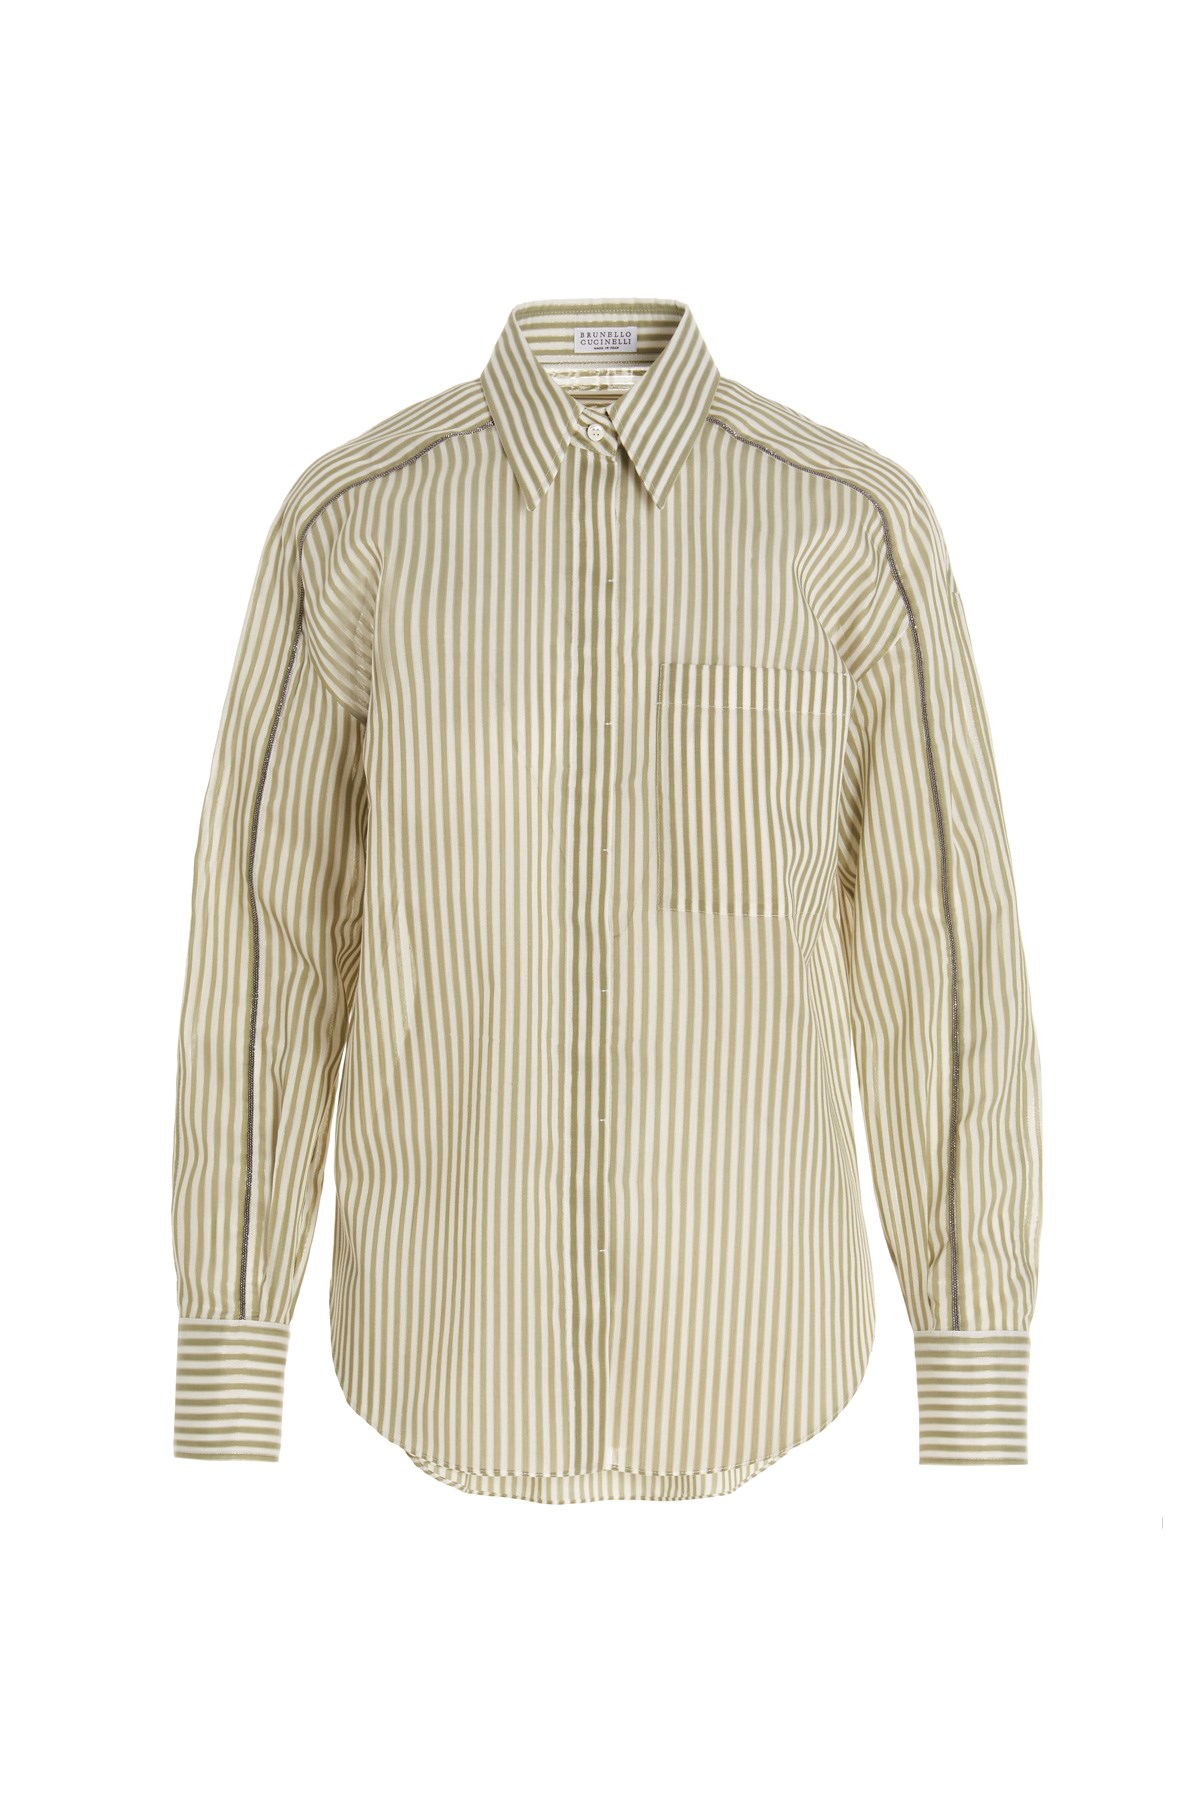 BRUNELLO CUCINELLI 'Sparkling Stripes’ Shirt